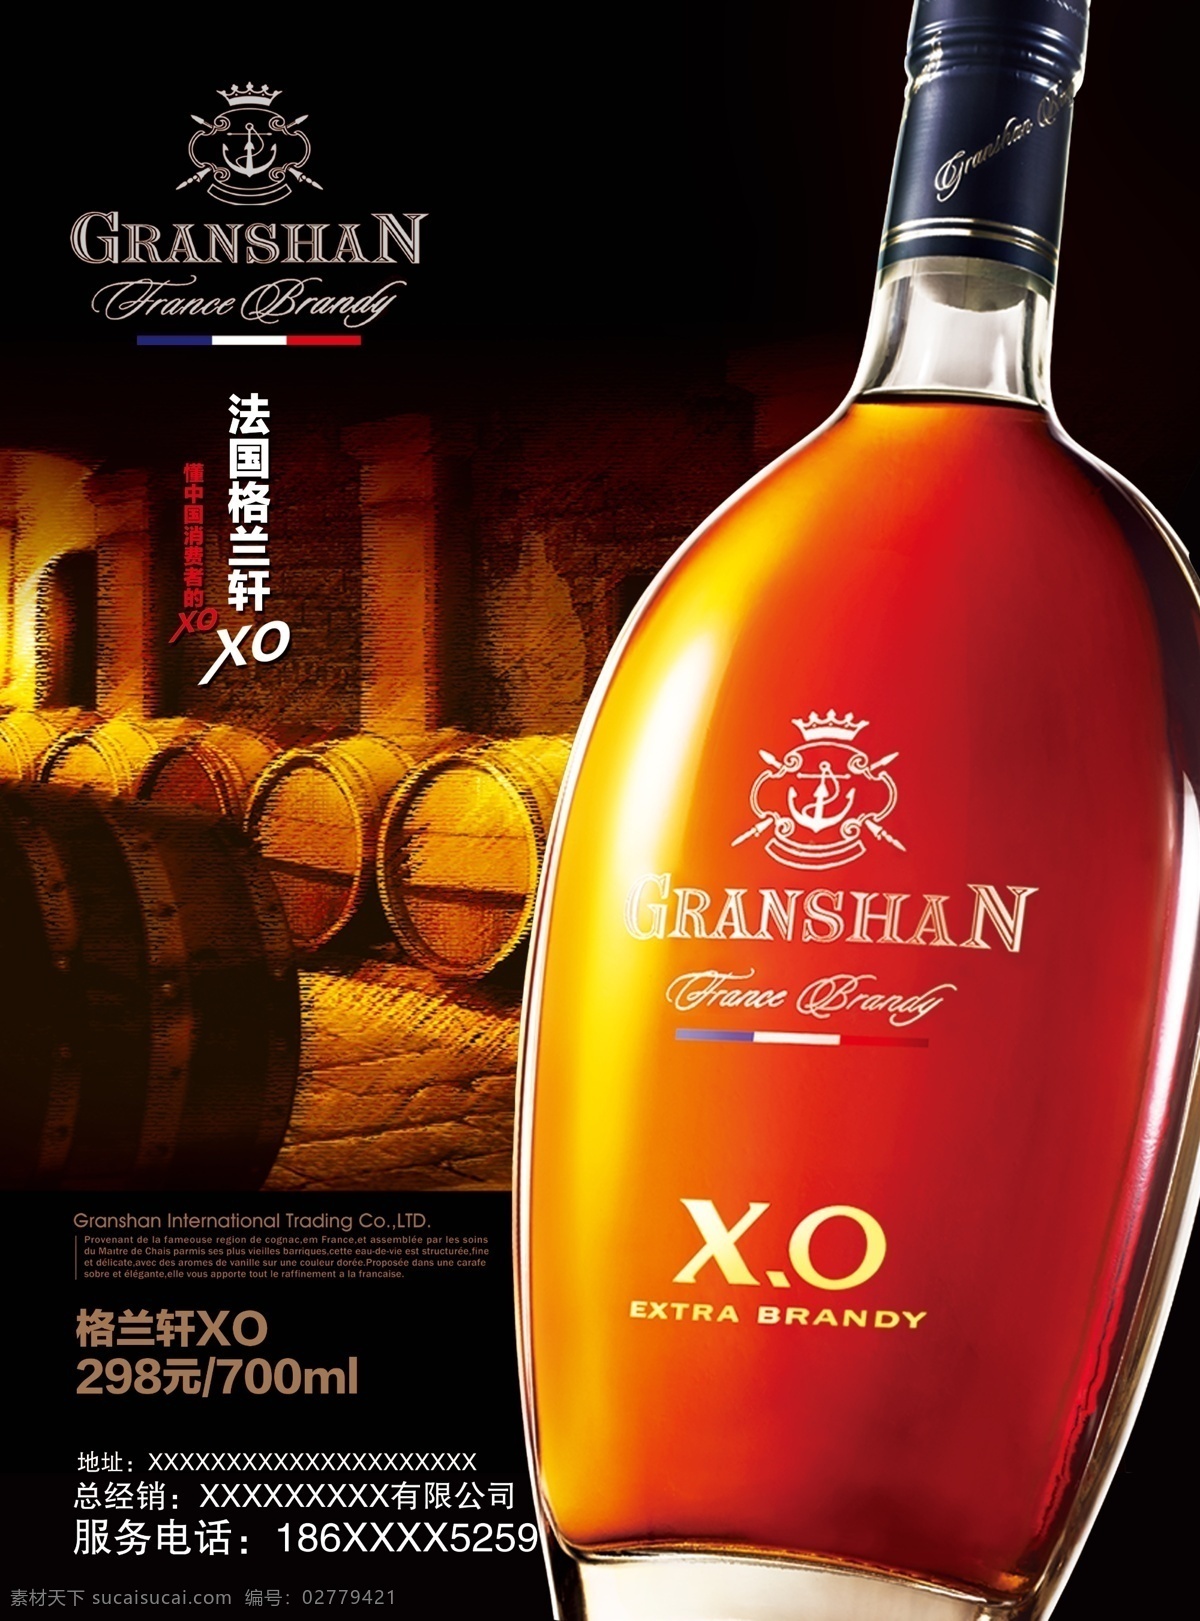 格兰 轩 xo 酒业 背景 高清 酒业海报 背景图片 广告背景 设计图 黑色